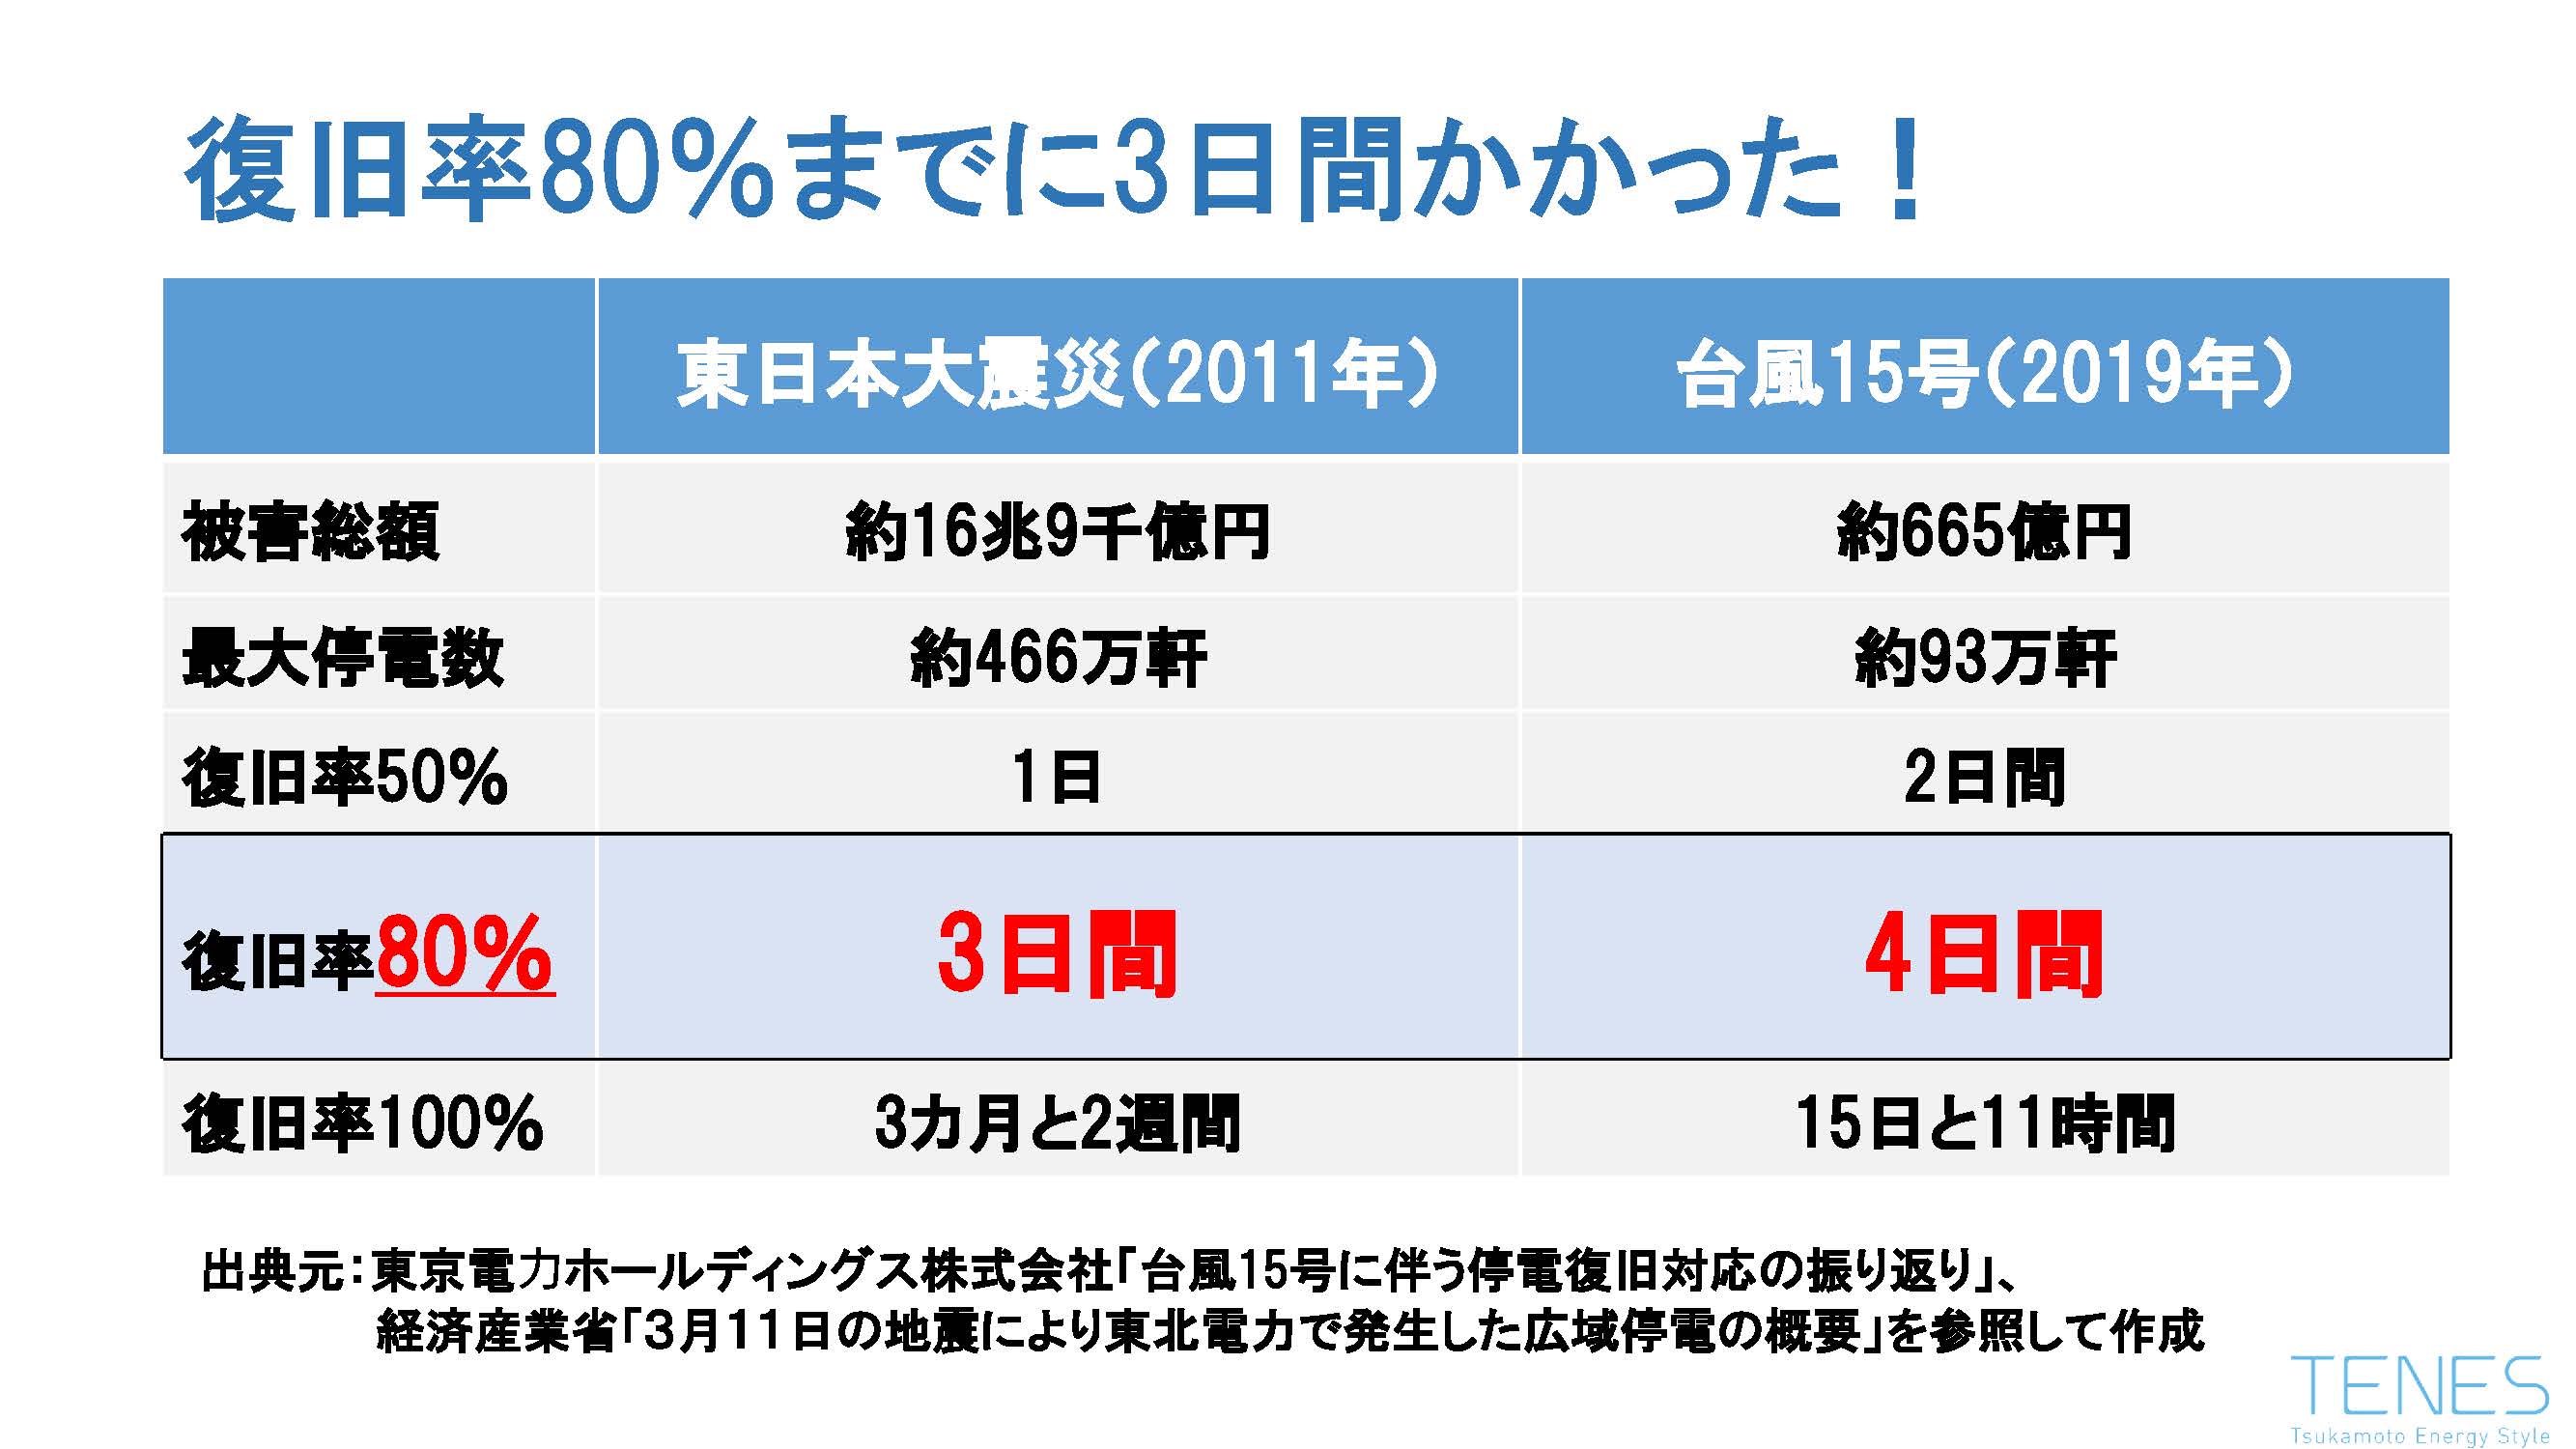 東日本大震災、台風15号の停電被害による復旧までの日数